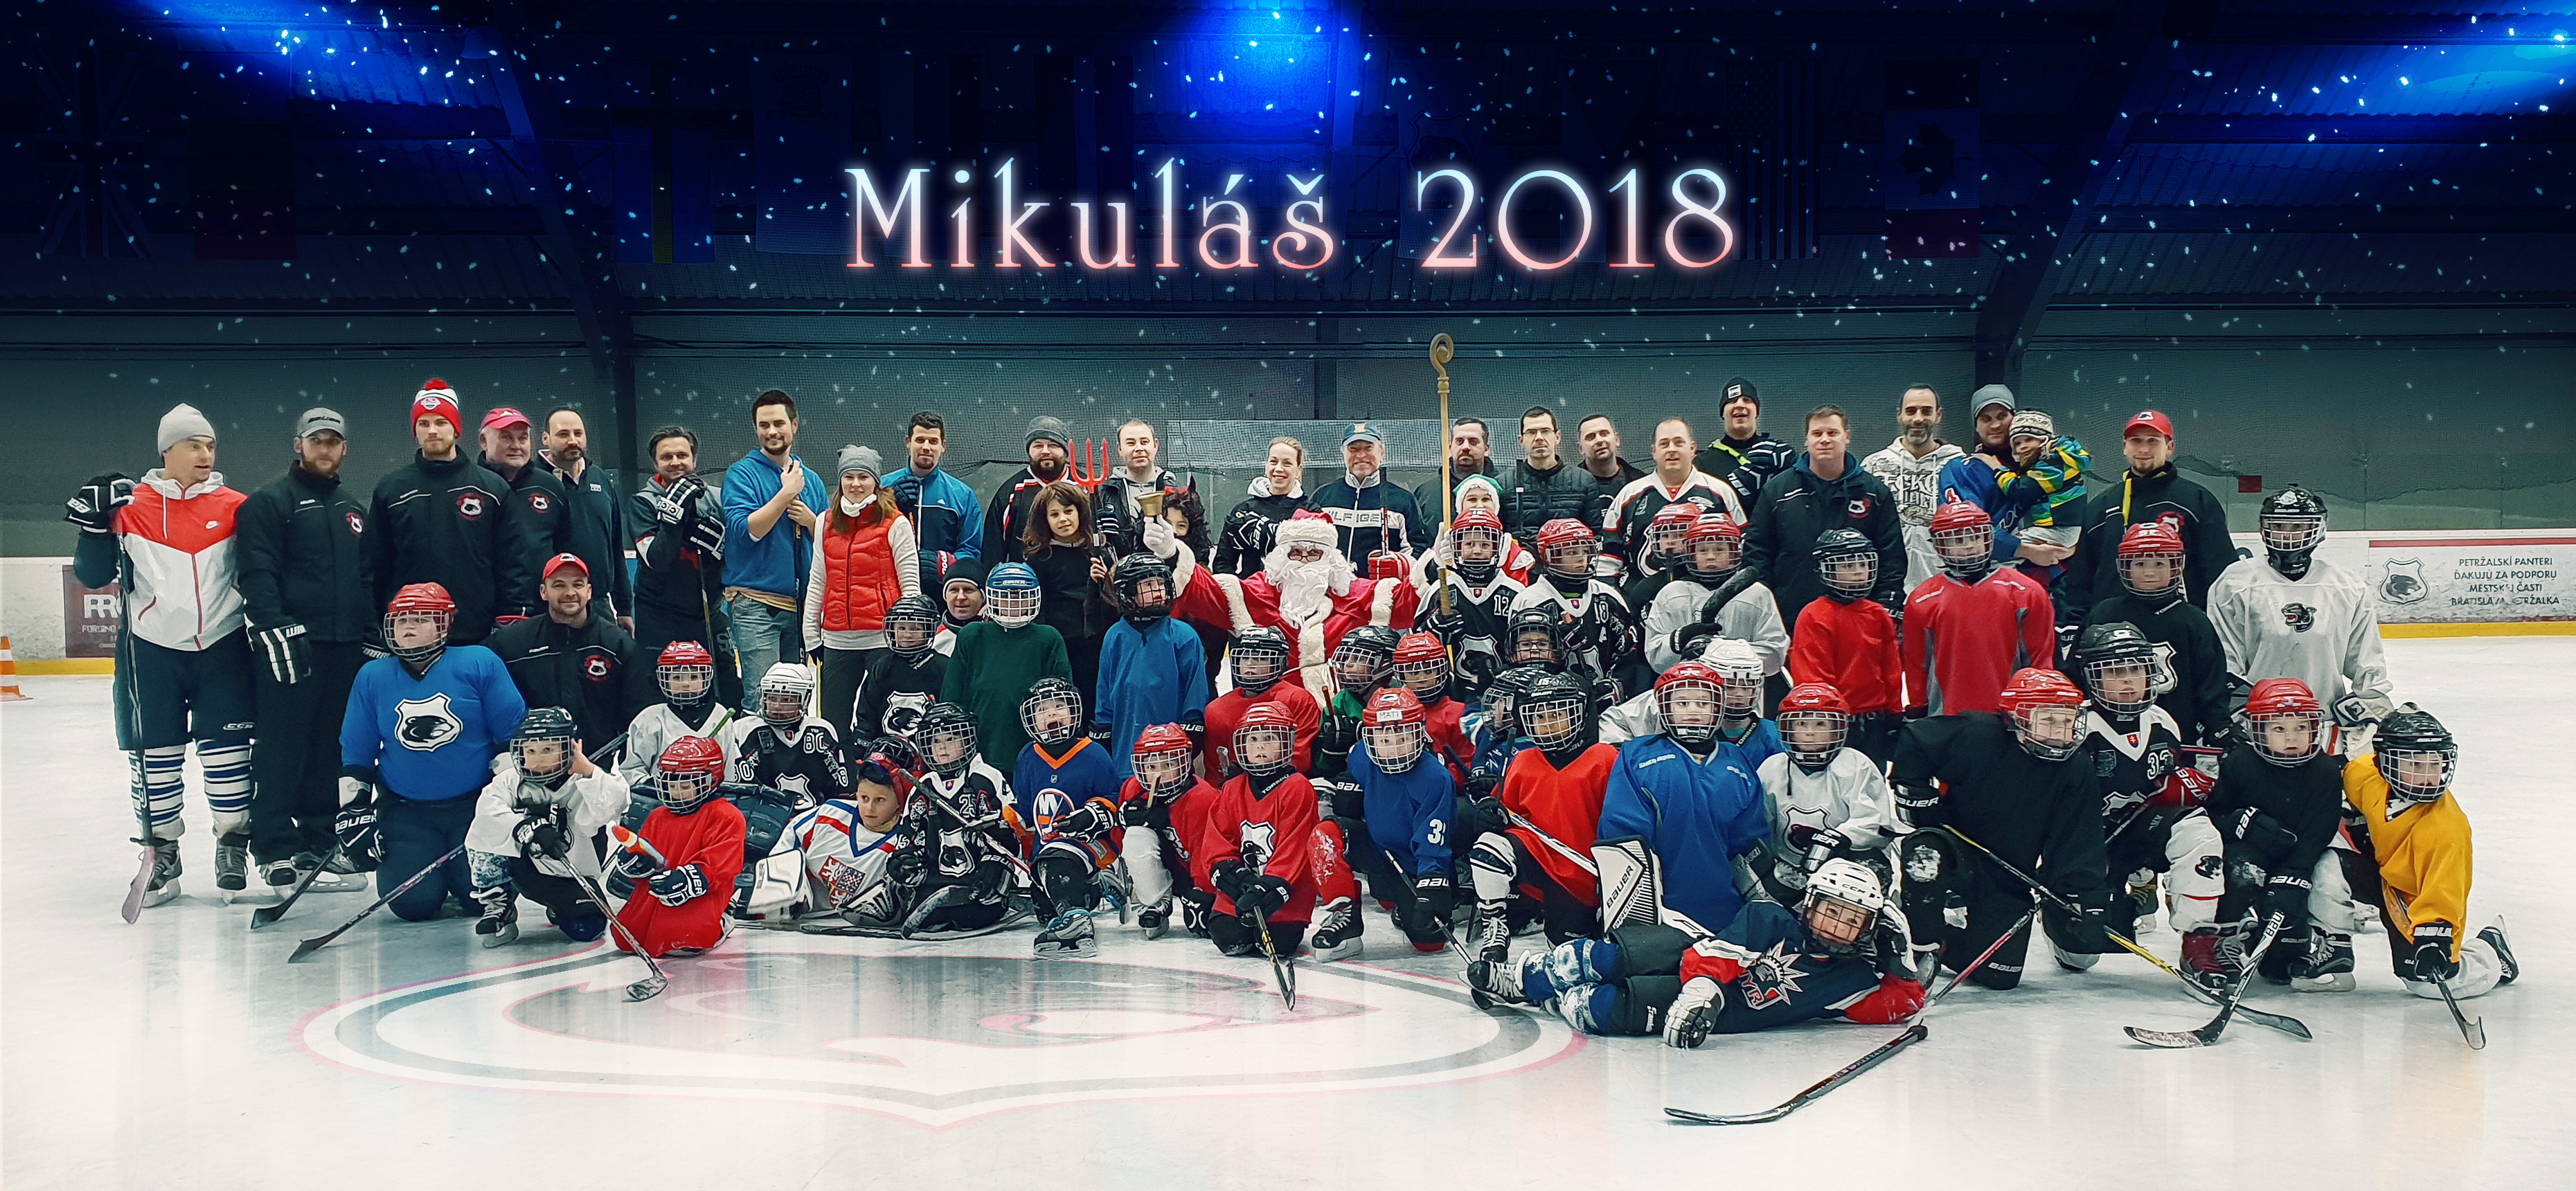 mikulas 2018